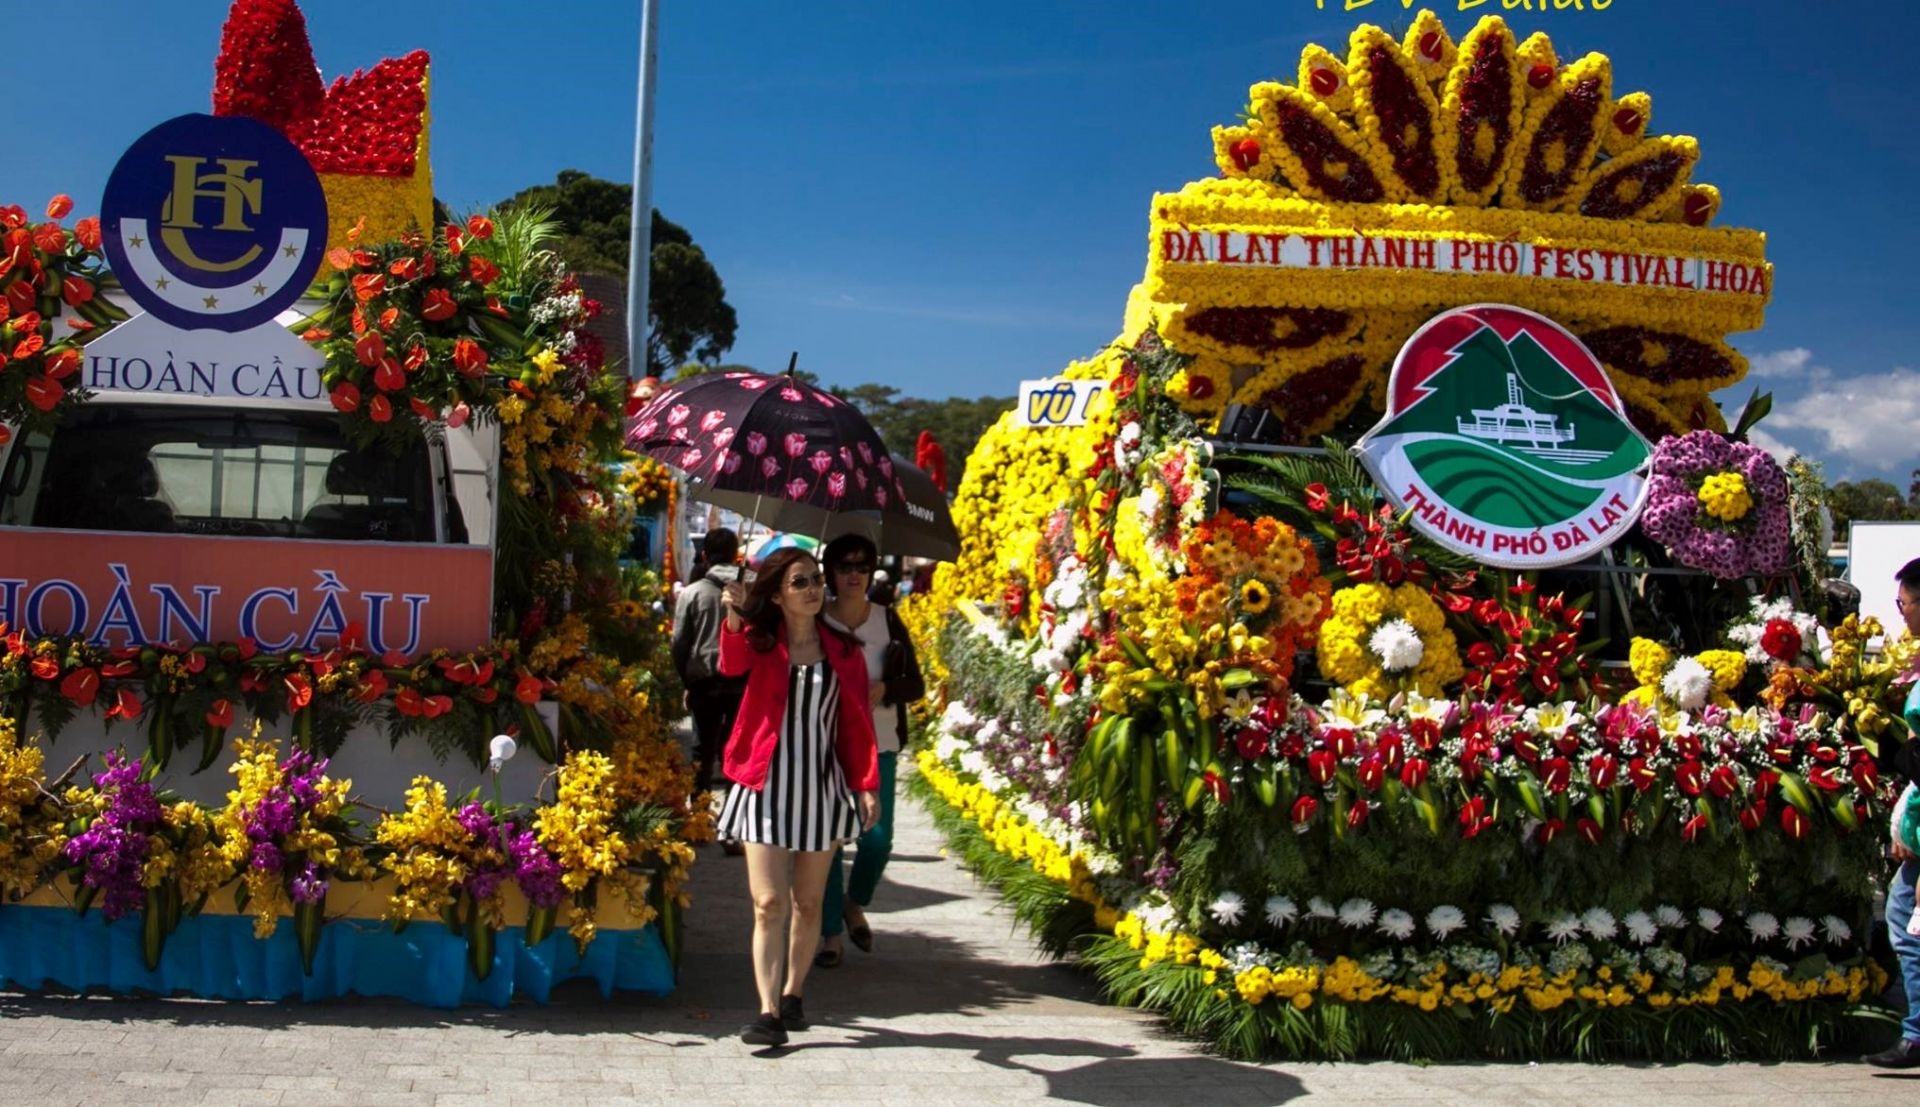 Dịp lễ hội Festival hoa Đà Lạt năm 2022 chào đón 700 nghìn lượt khách đến thăm